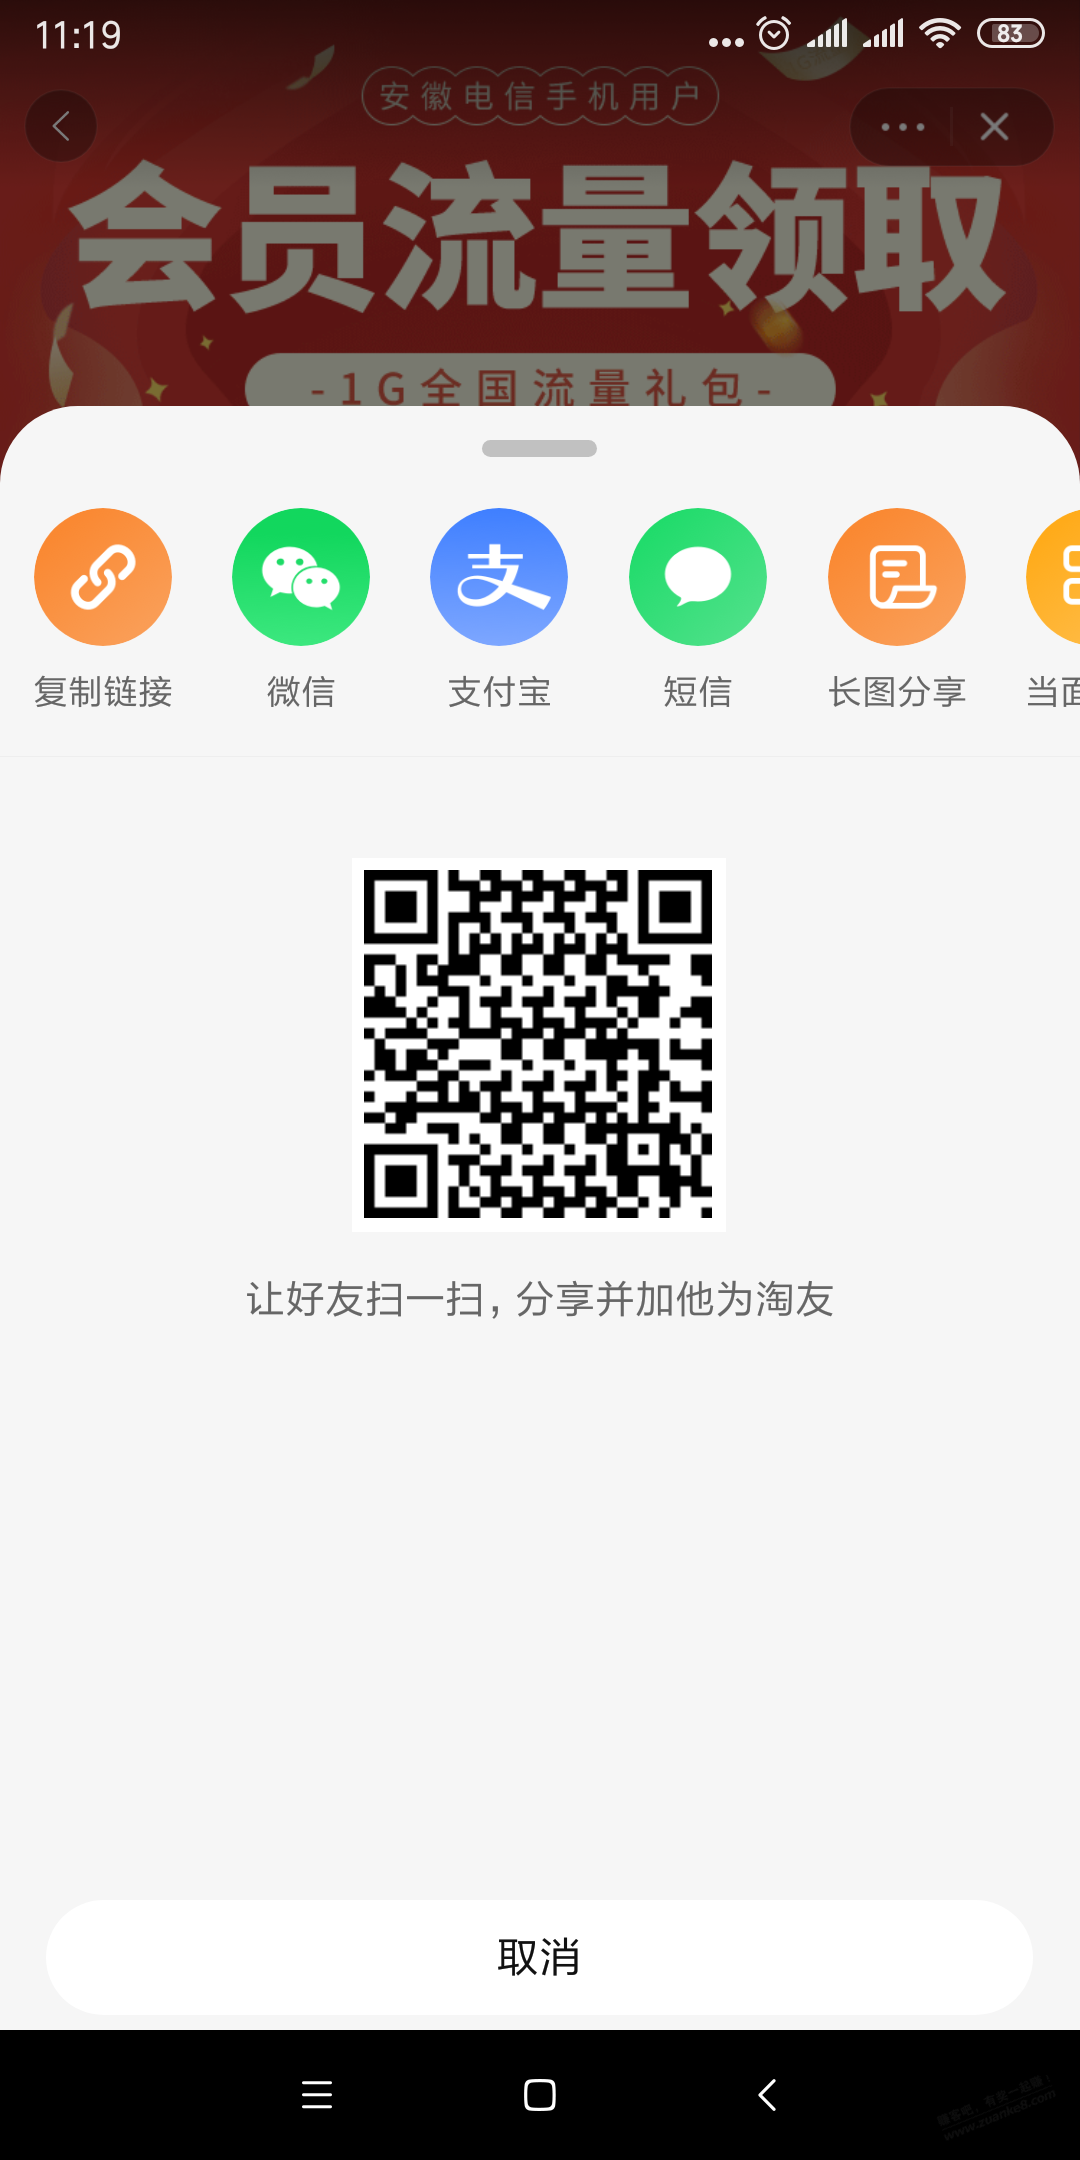 安徽电信1G国内流量领取-惠小助(52huixz.com)